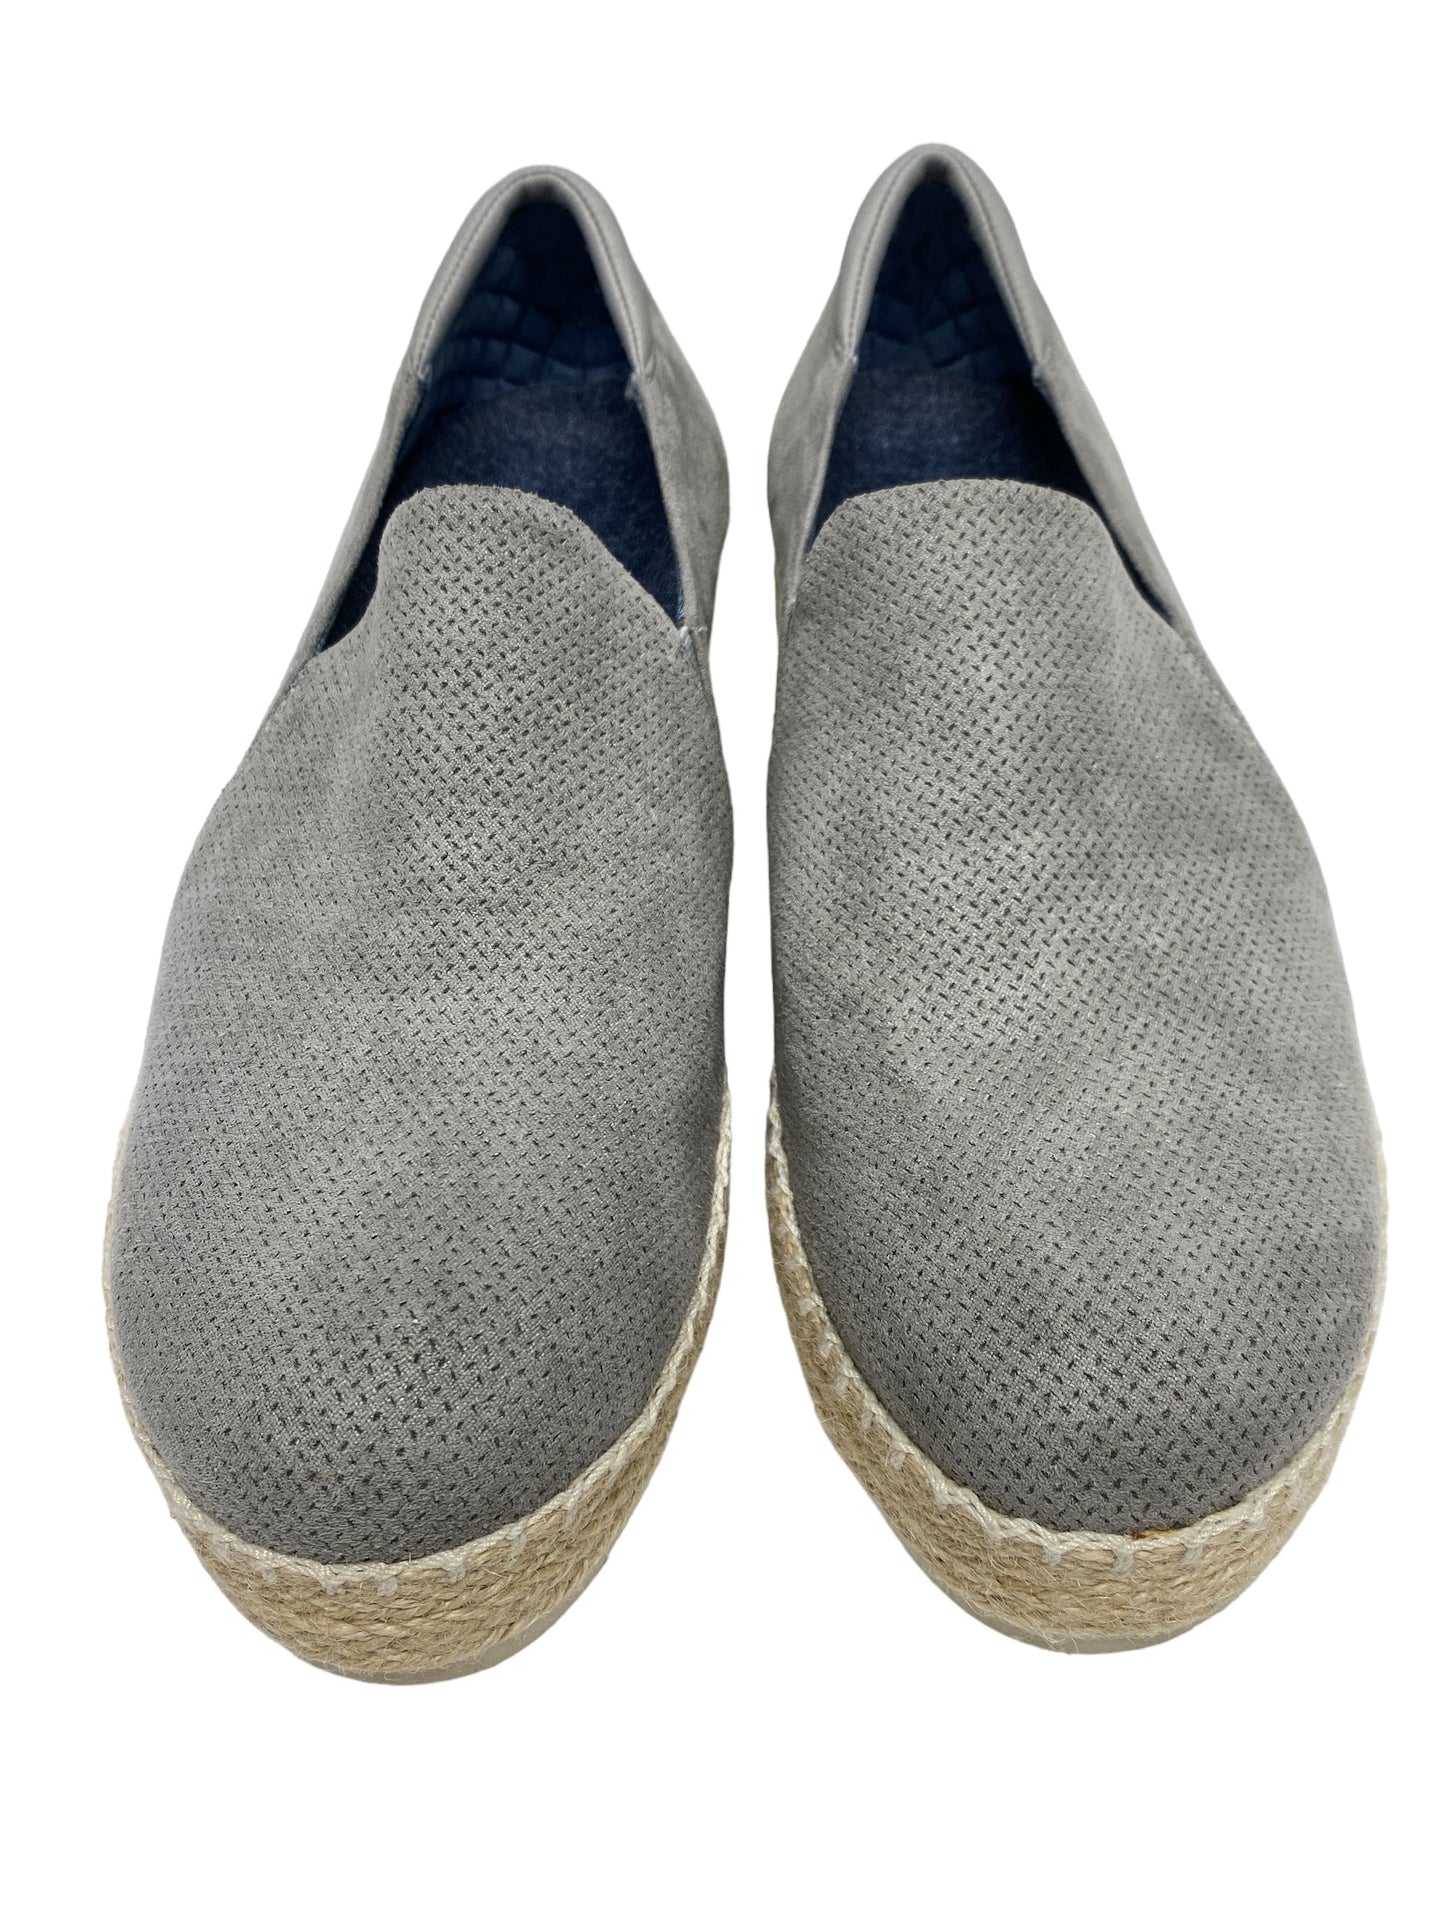 Beige Shoes Heels Wedge Dr Scholls, Size 8.5